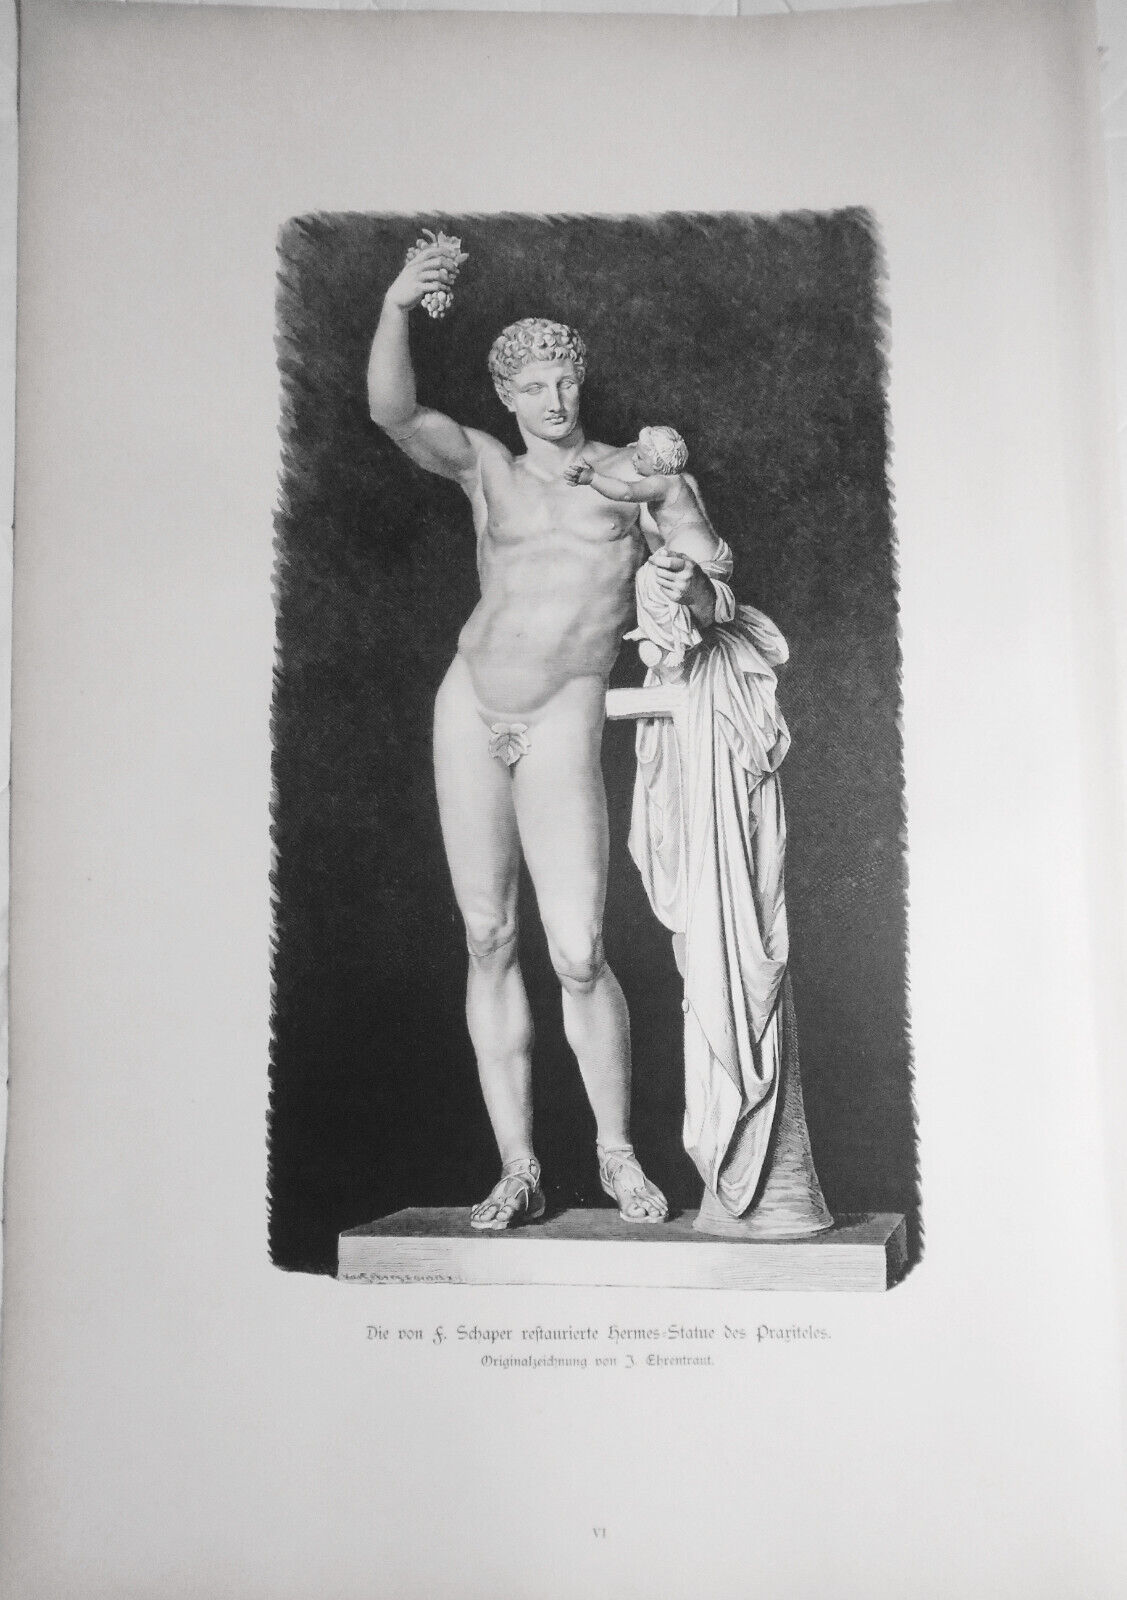 Die von F. Schaper Restaurierte Hermes-statue des Prariteles J. Ehrentraut 1884